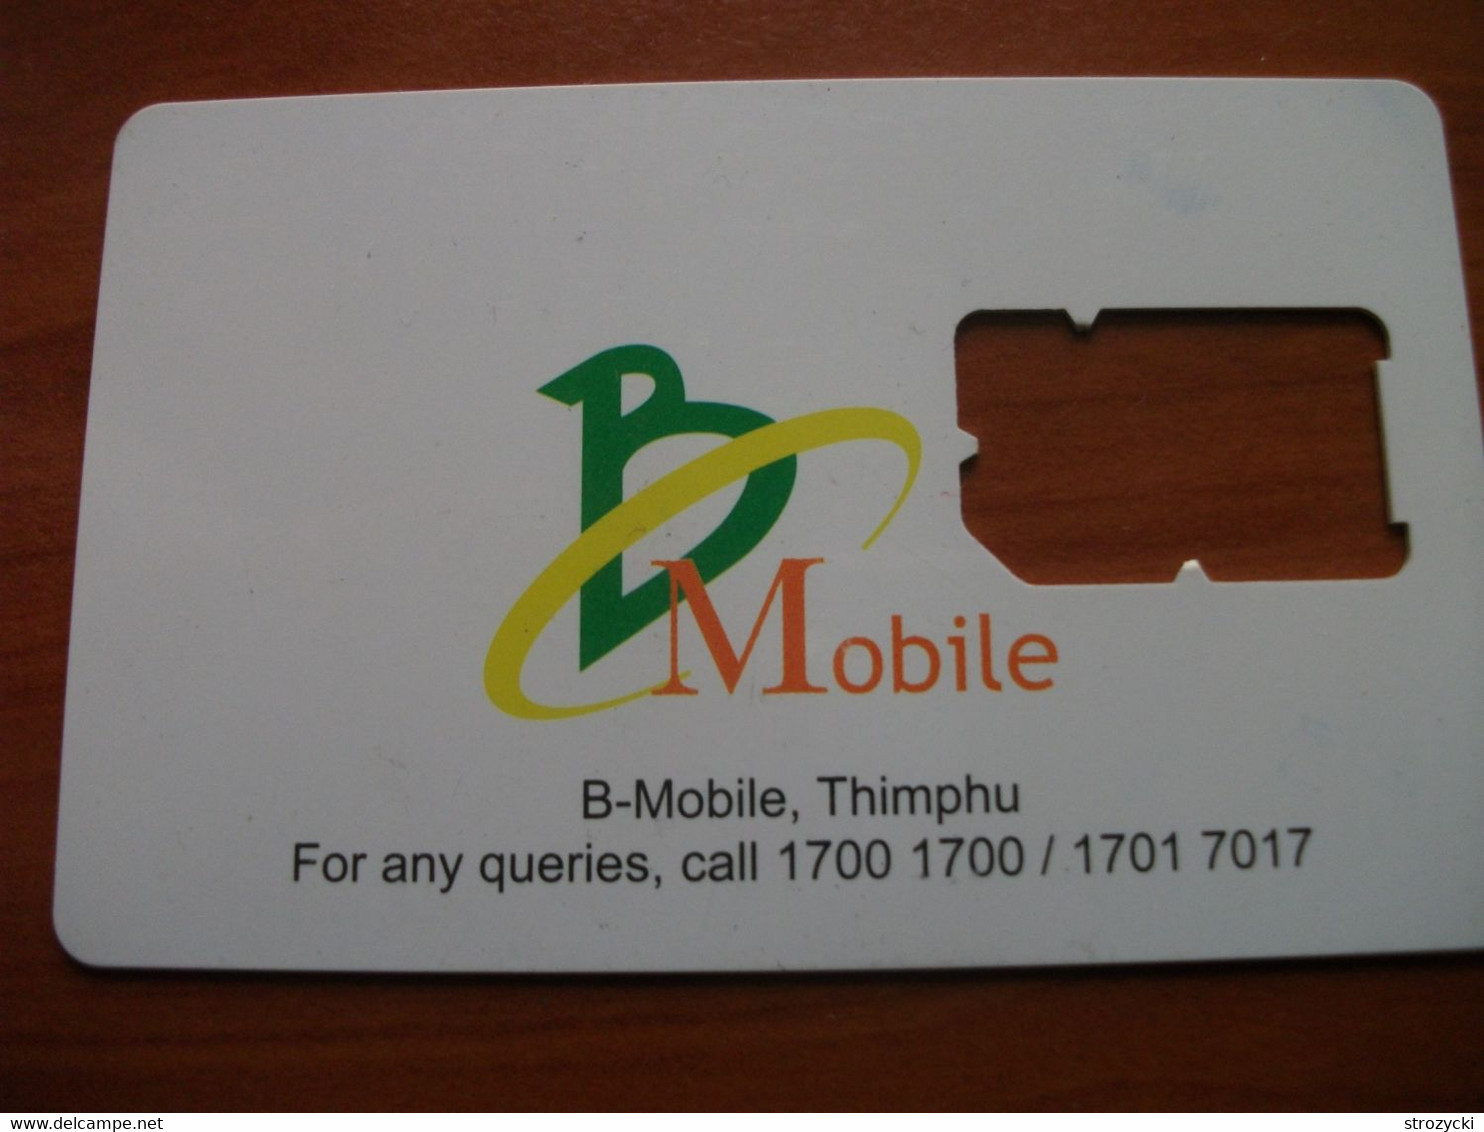 Bhutan - BMobile - GSM SIM - Bhutan